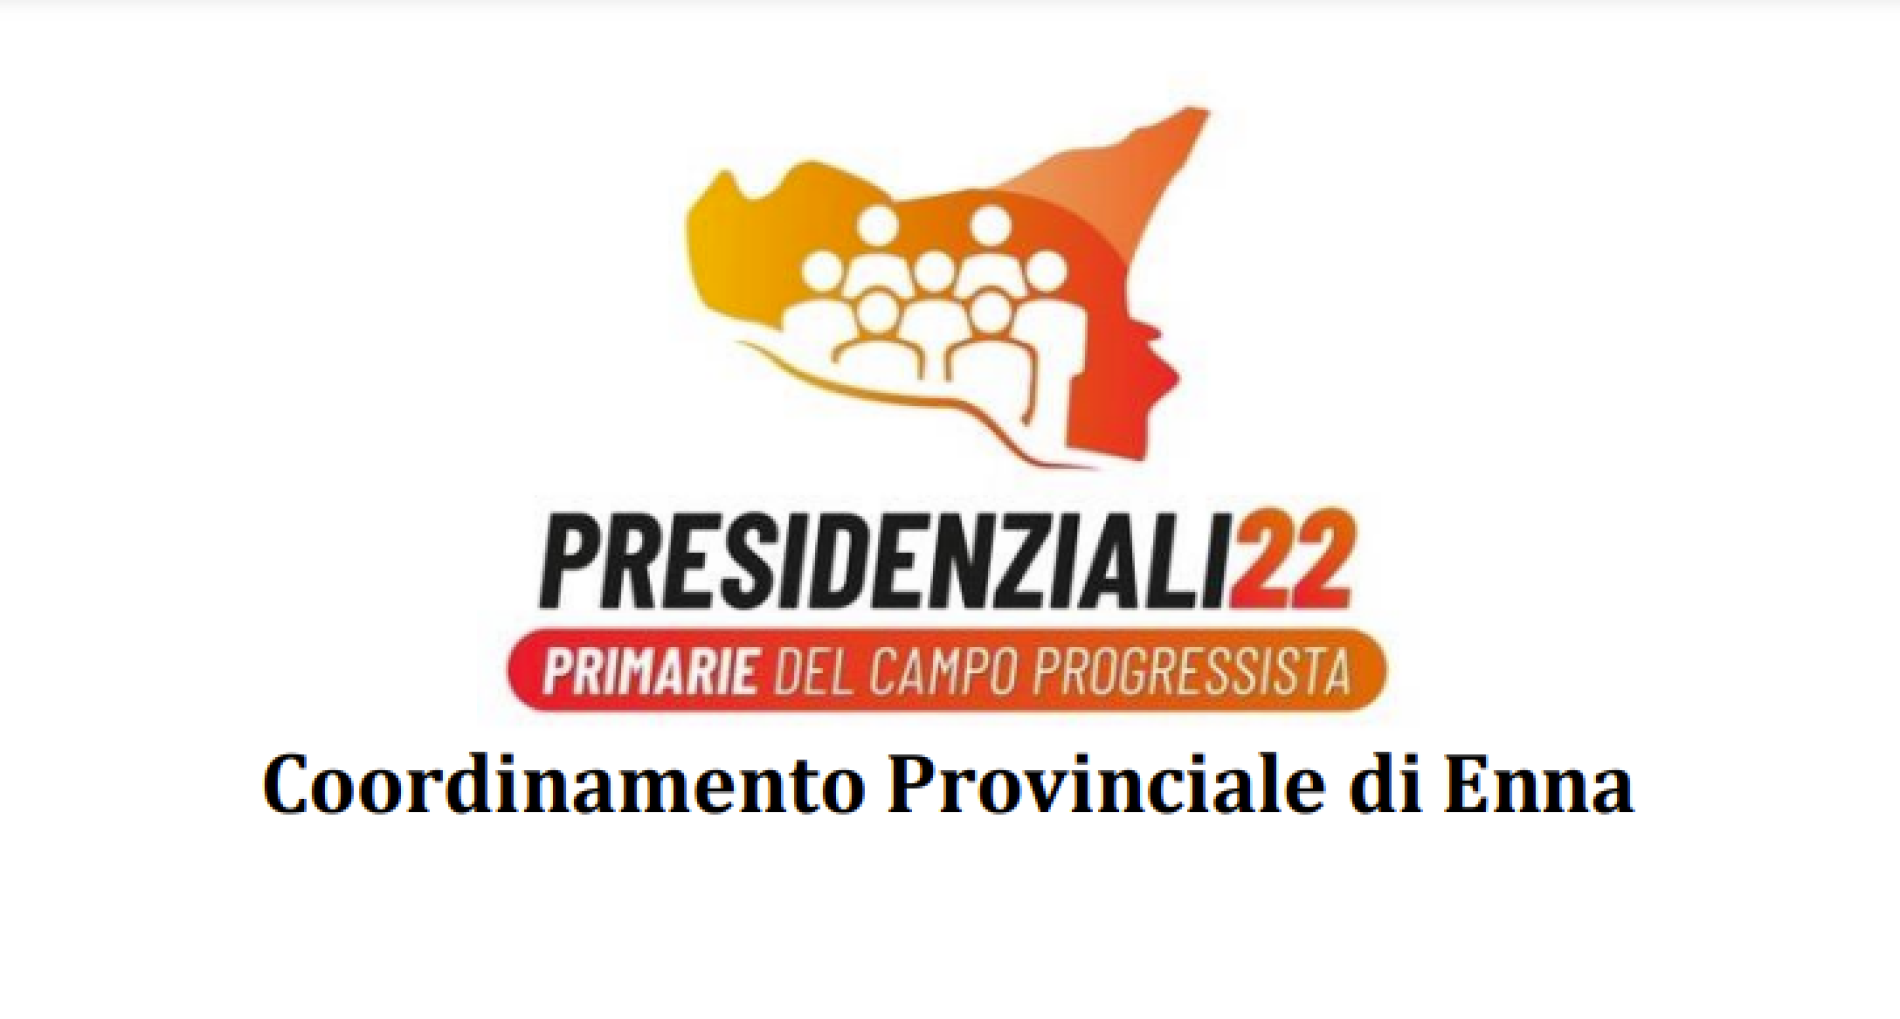 Enna. Primarie del Campo Progressista, presidenziali 2022, si vota sabato 23